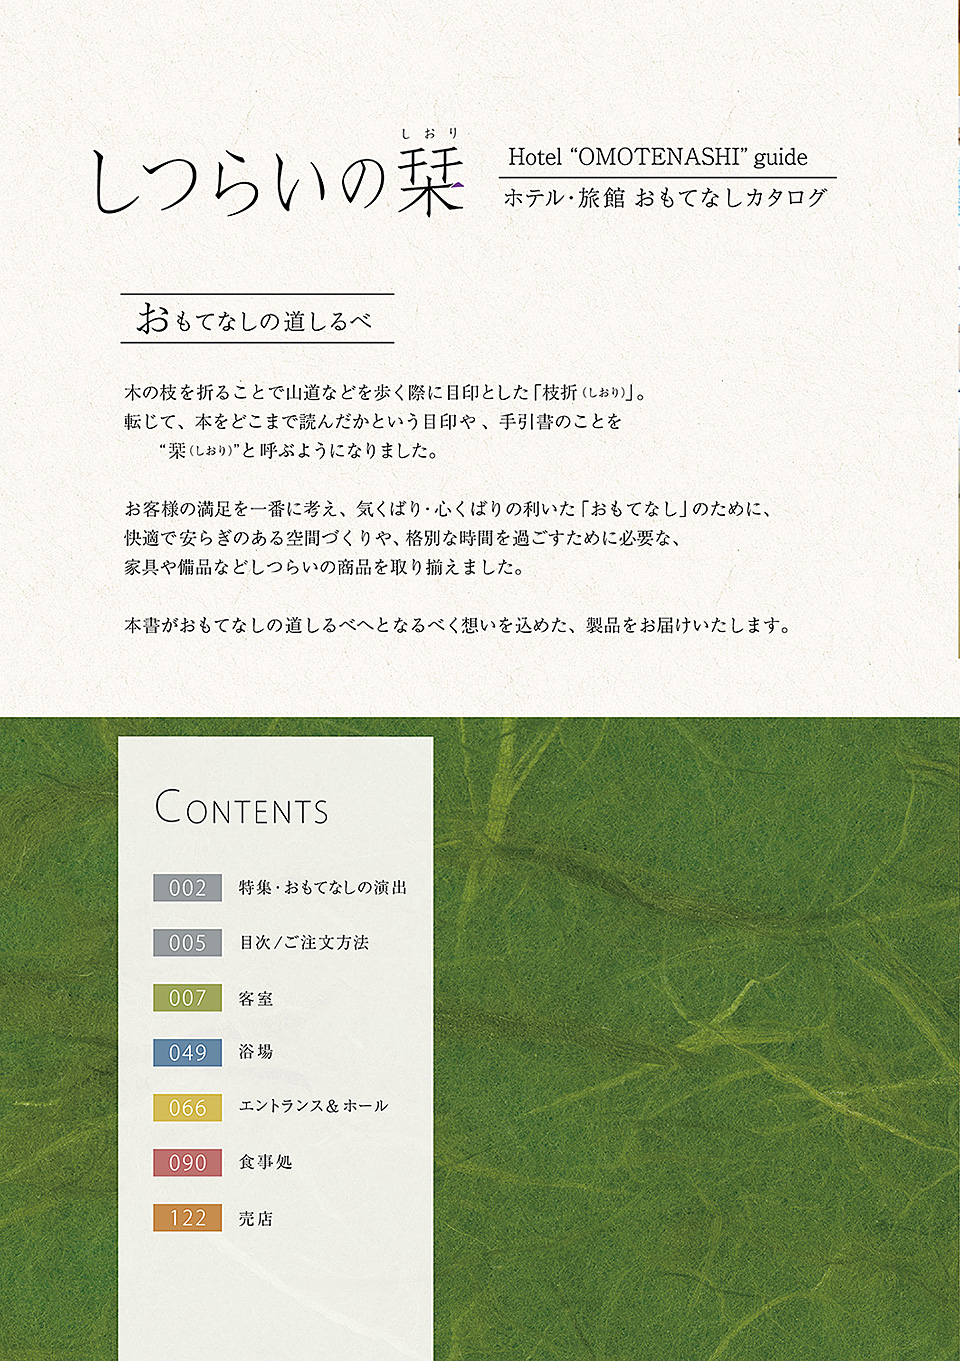 しつらいの栞 vol.2 ホテル・旅館 おもてなしカタログ Hotel "OMOTENASHI" guide